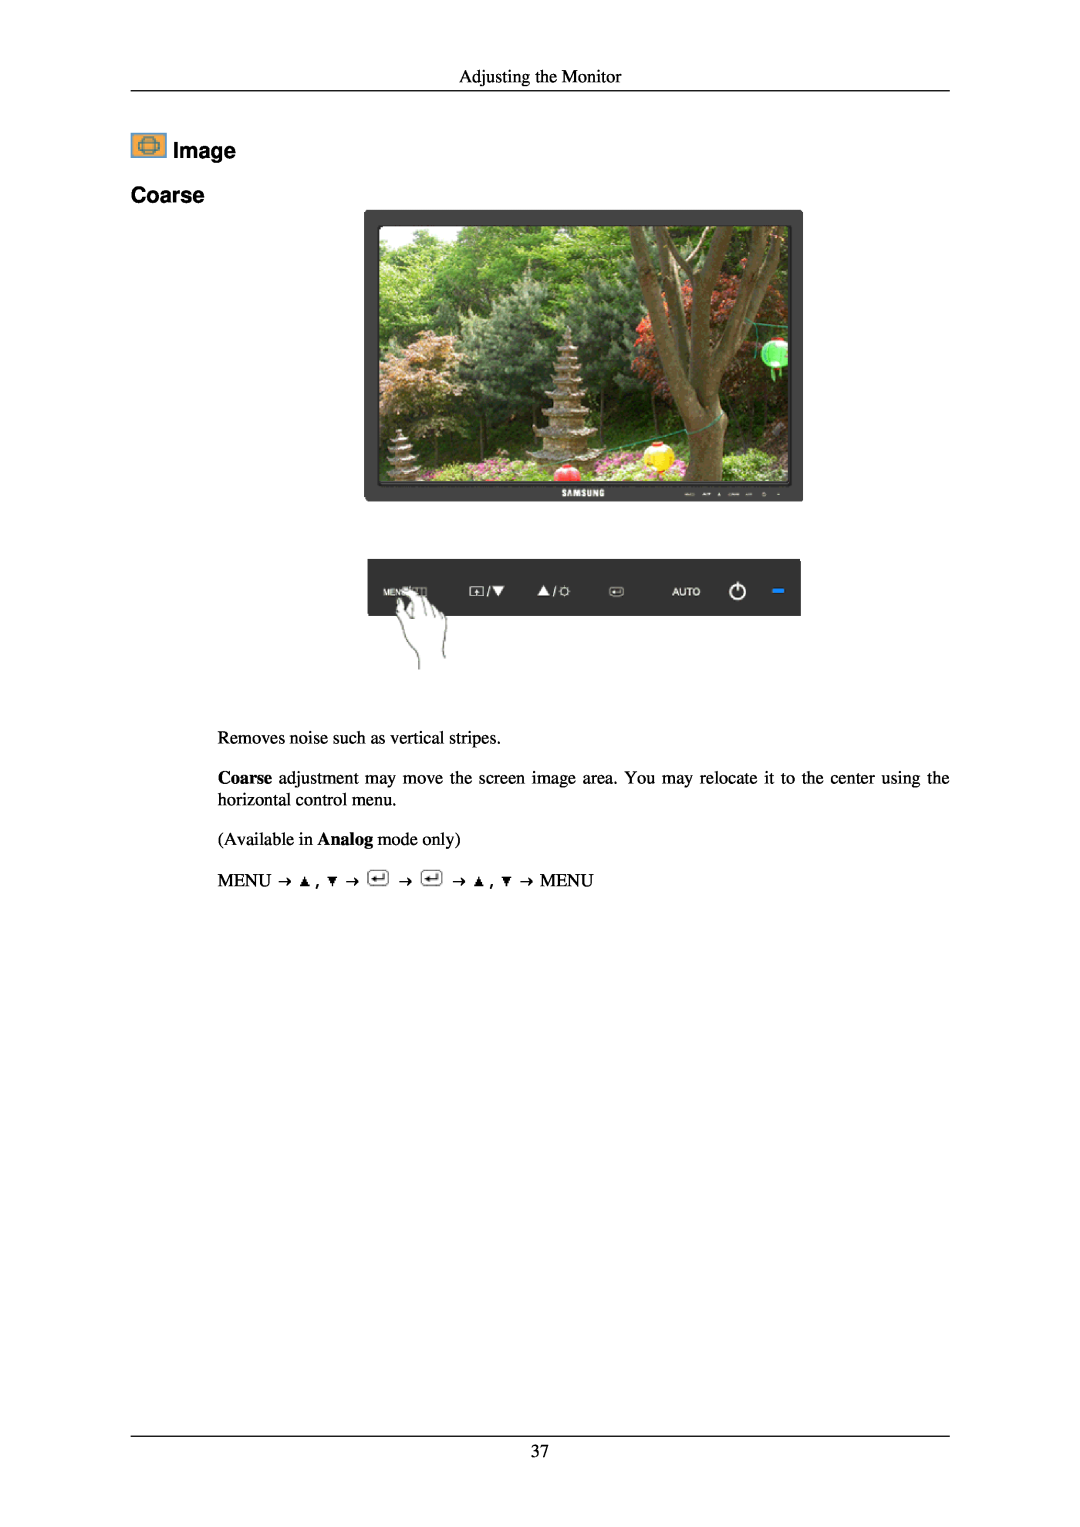 Samsung 2243NWX user manual Image Coarse, Menu → , → → → , → Menu 